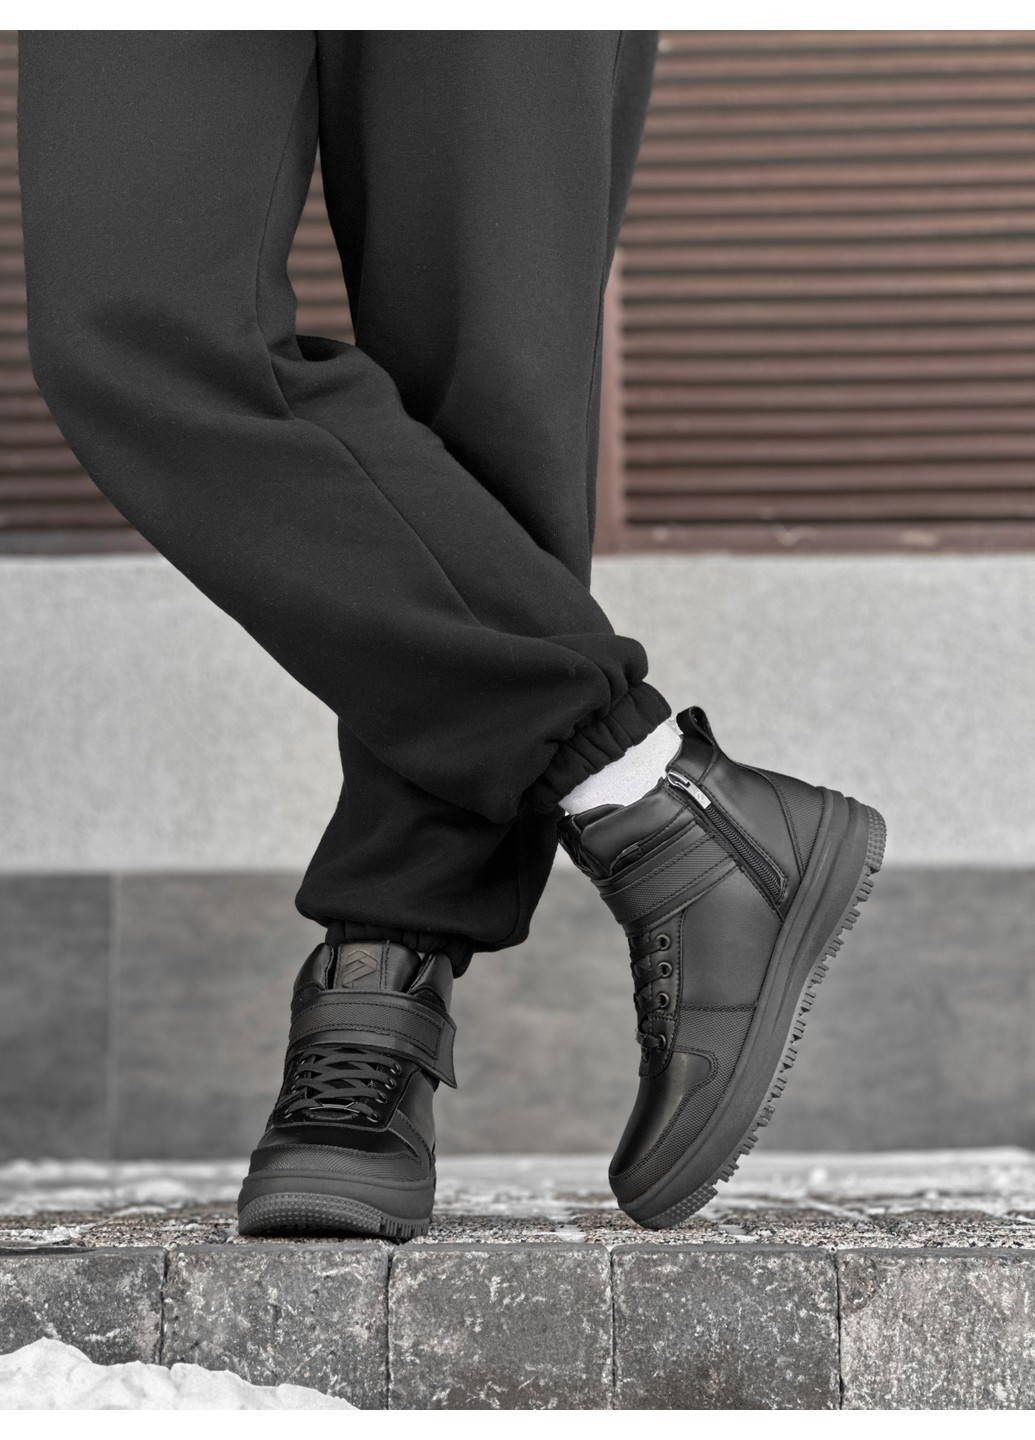 Черные зимние мужские ботинки зимние Podkradylin